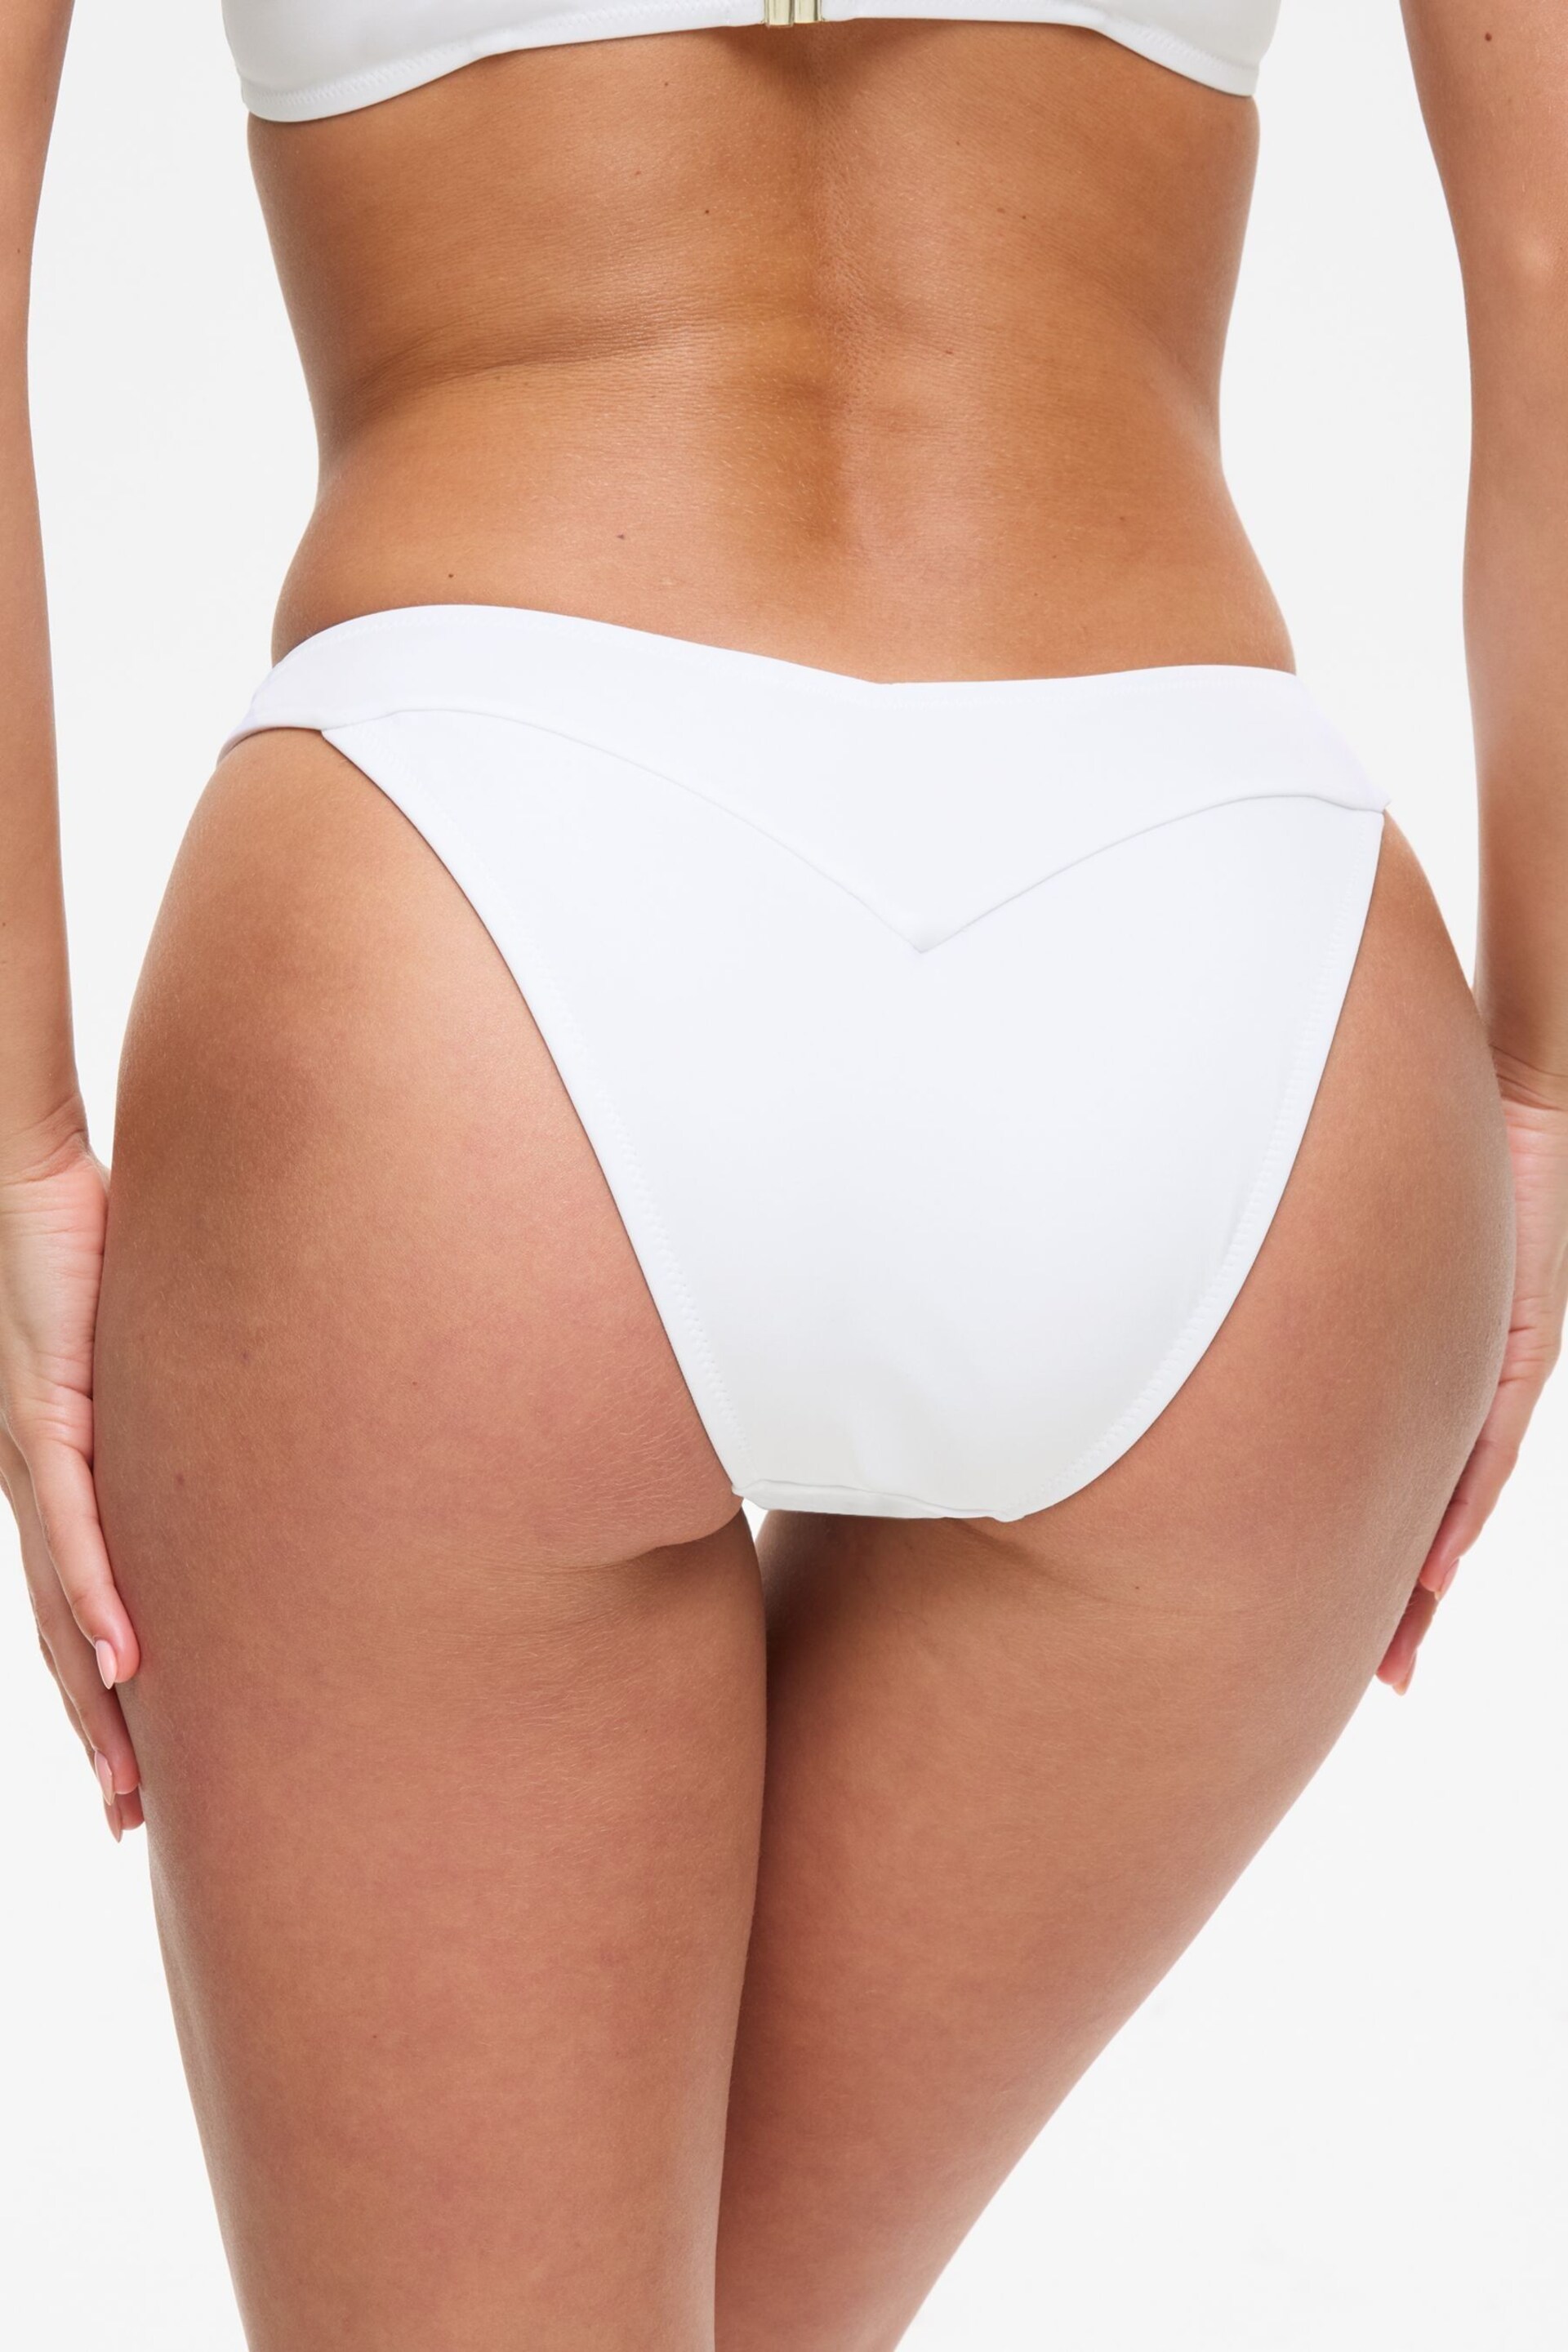 Ann Summers White Miami Dreams Brazilian Bikini Bottoms - Image 3 of 6